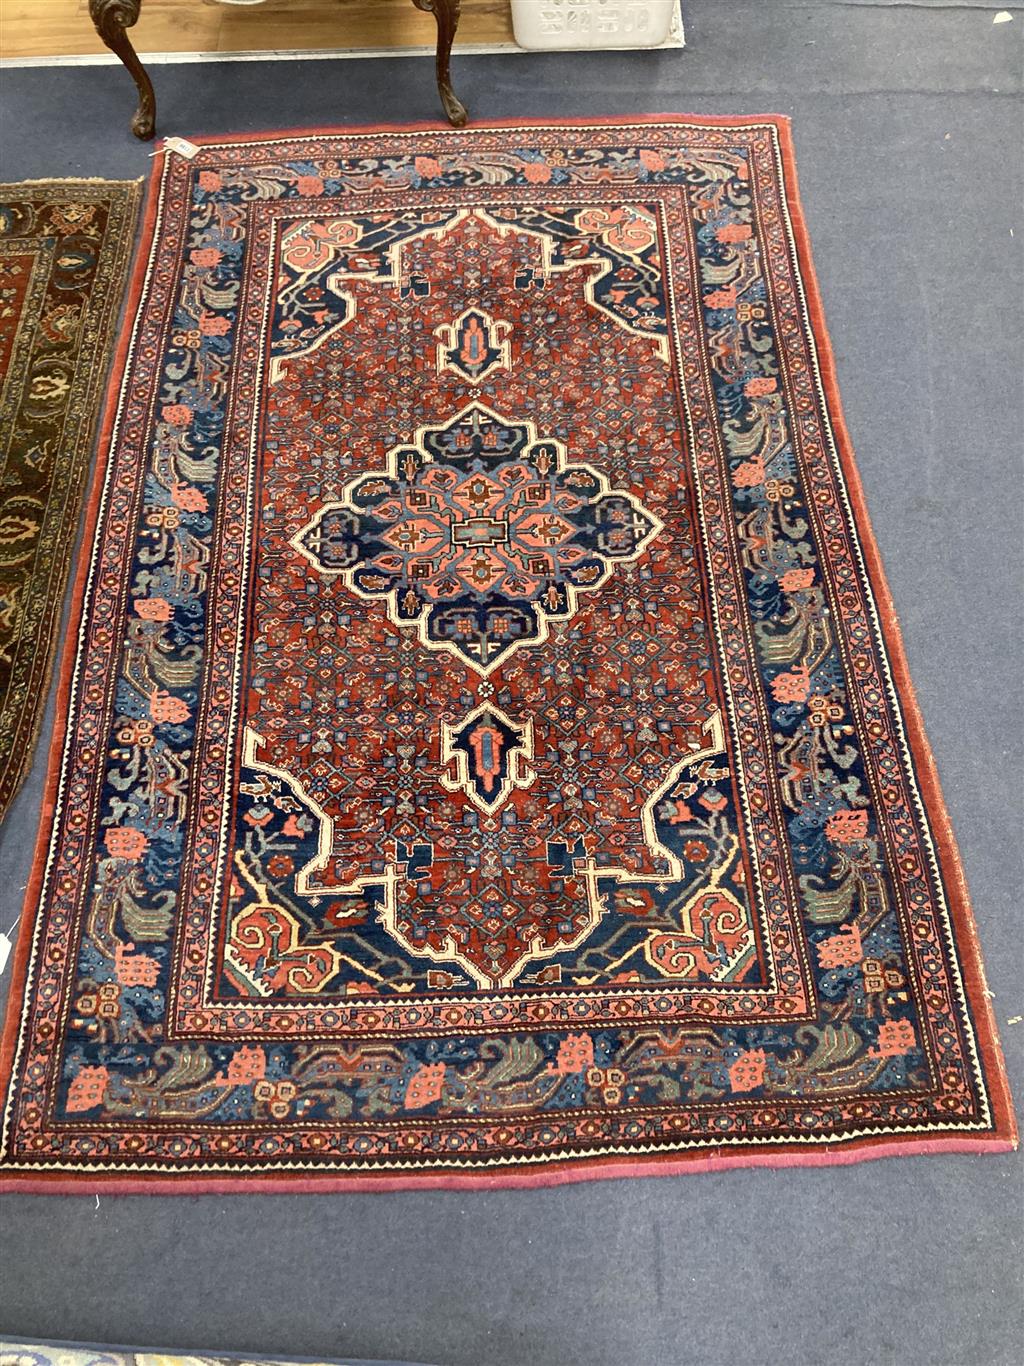 A red ground Shiraz rug, 204 x 132cm